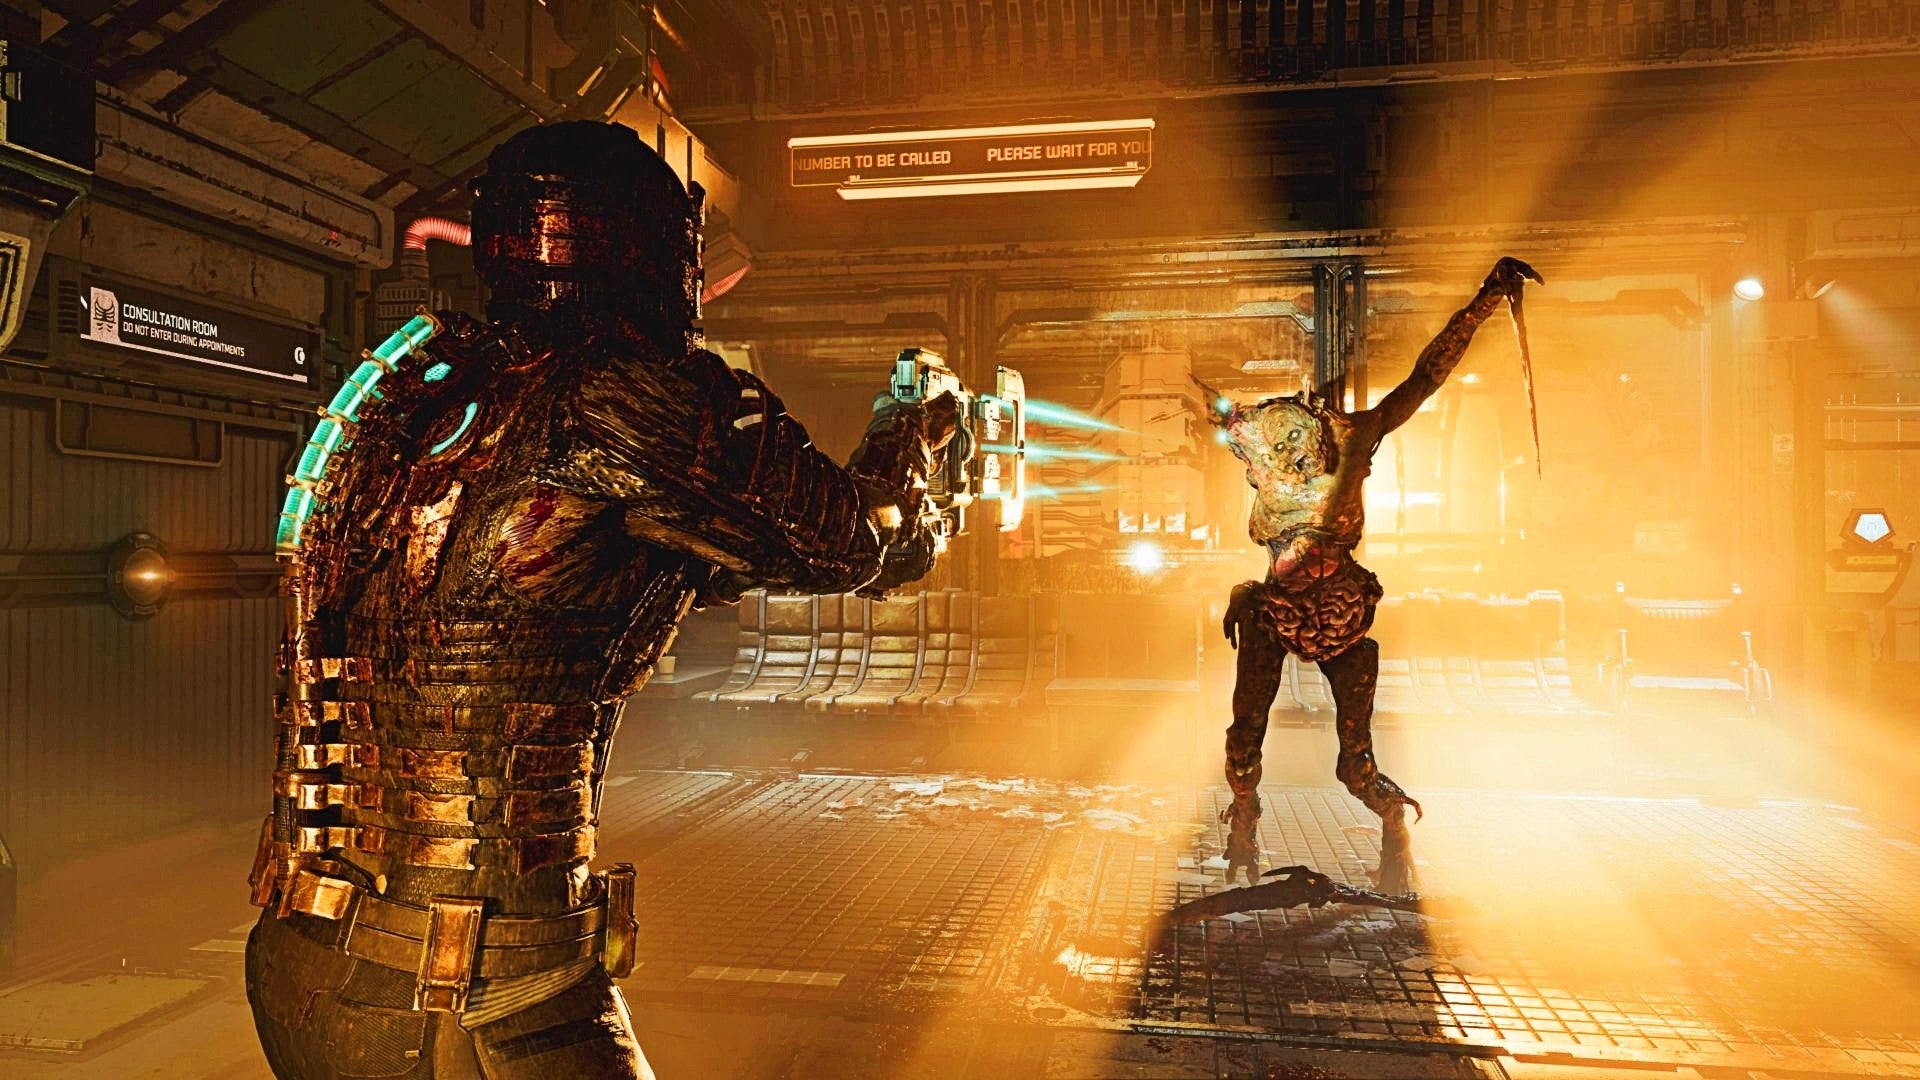 Bilder zu Dead Space Remake: Bilder und Beschreibung im Xbox Store deuten auf In-App-Käufe hin